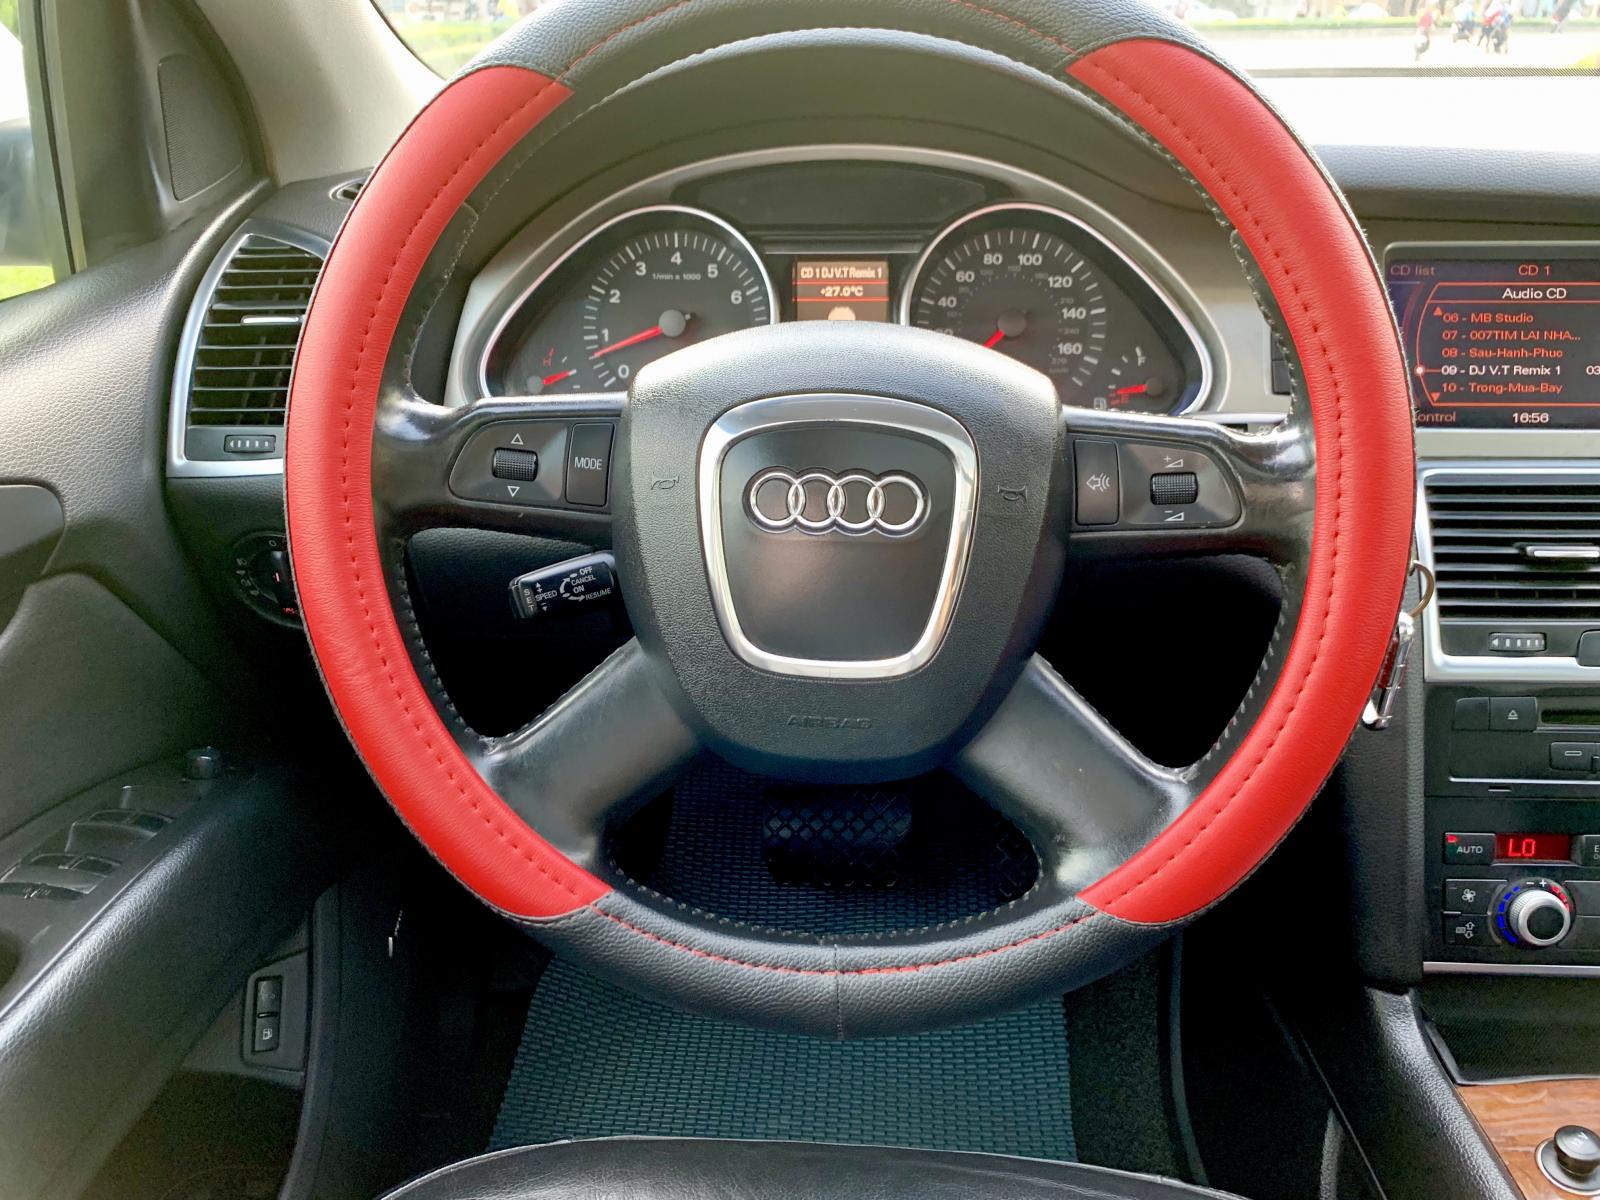 Audi Q7 2008 - Audi Q7 nhập Đức model 2008, hàng full đủ đồ chơi, hai cầu, số tự động 8 cấp cao